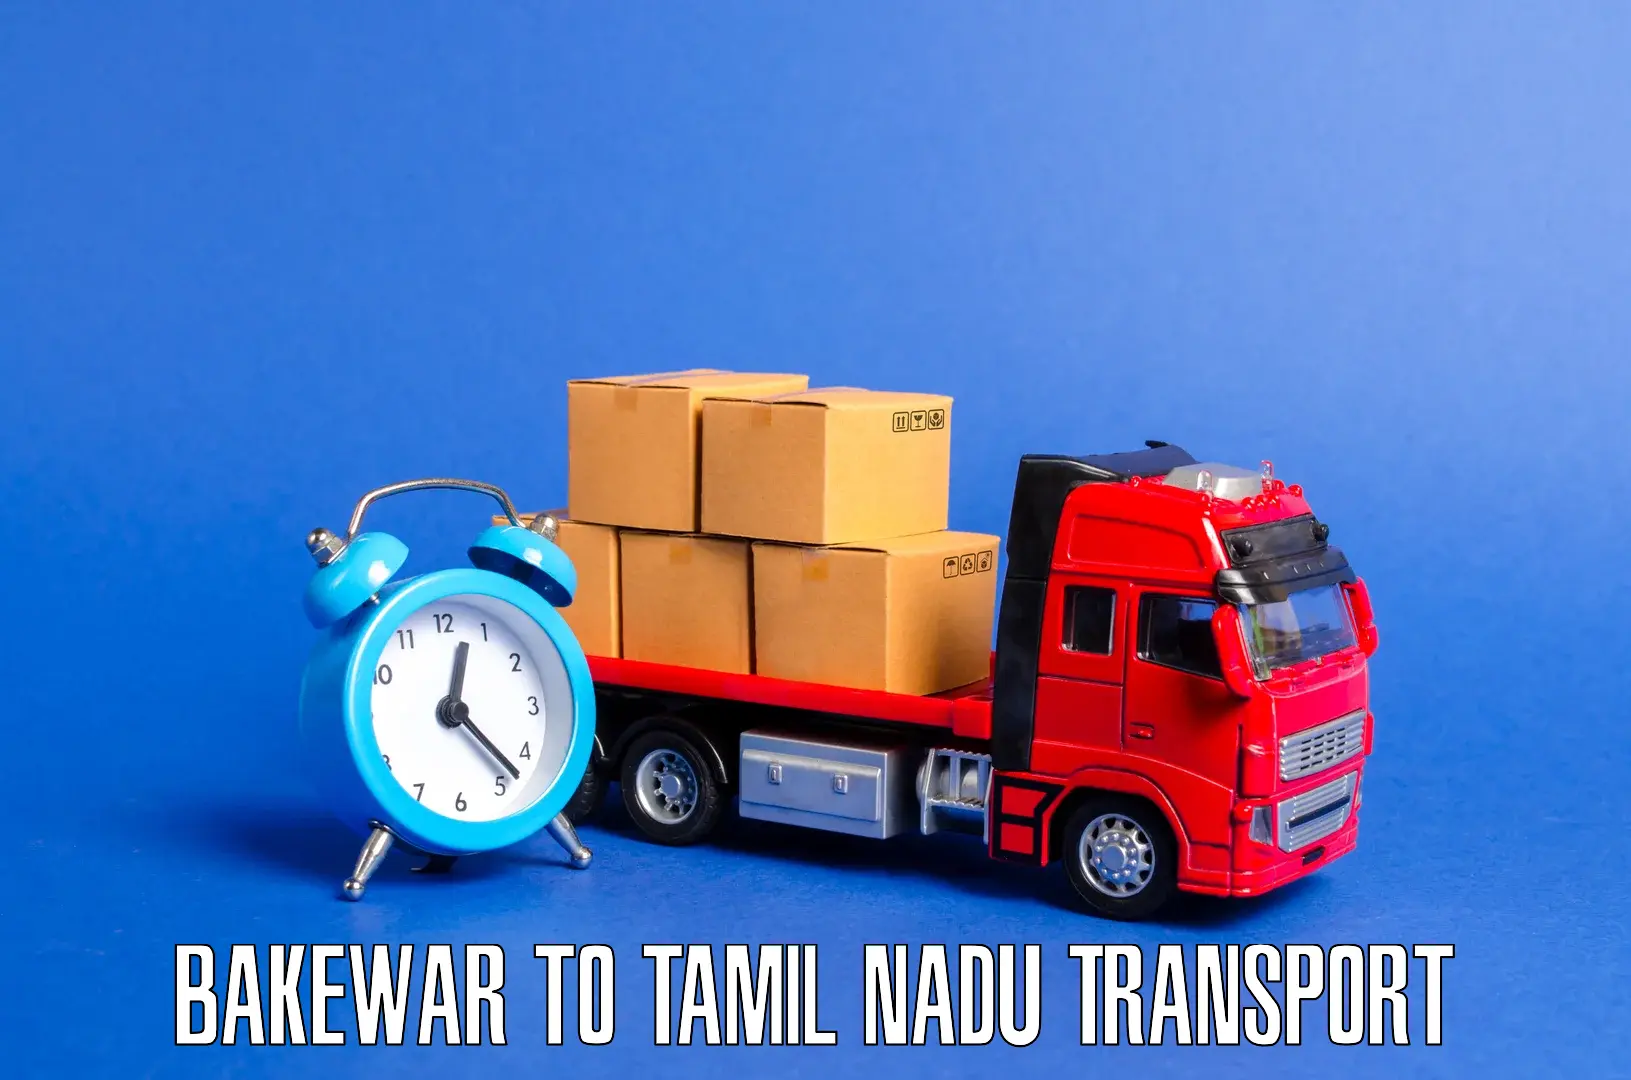 Transport services Bakewar to Tamil Nadu